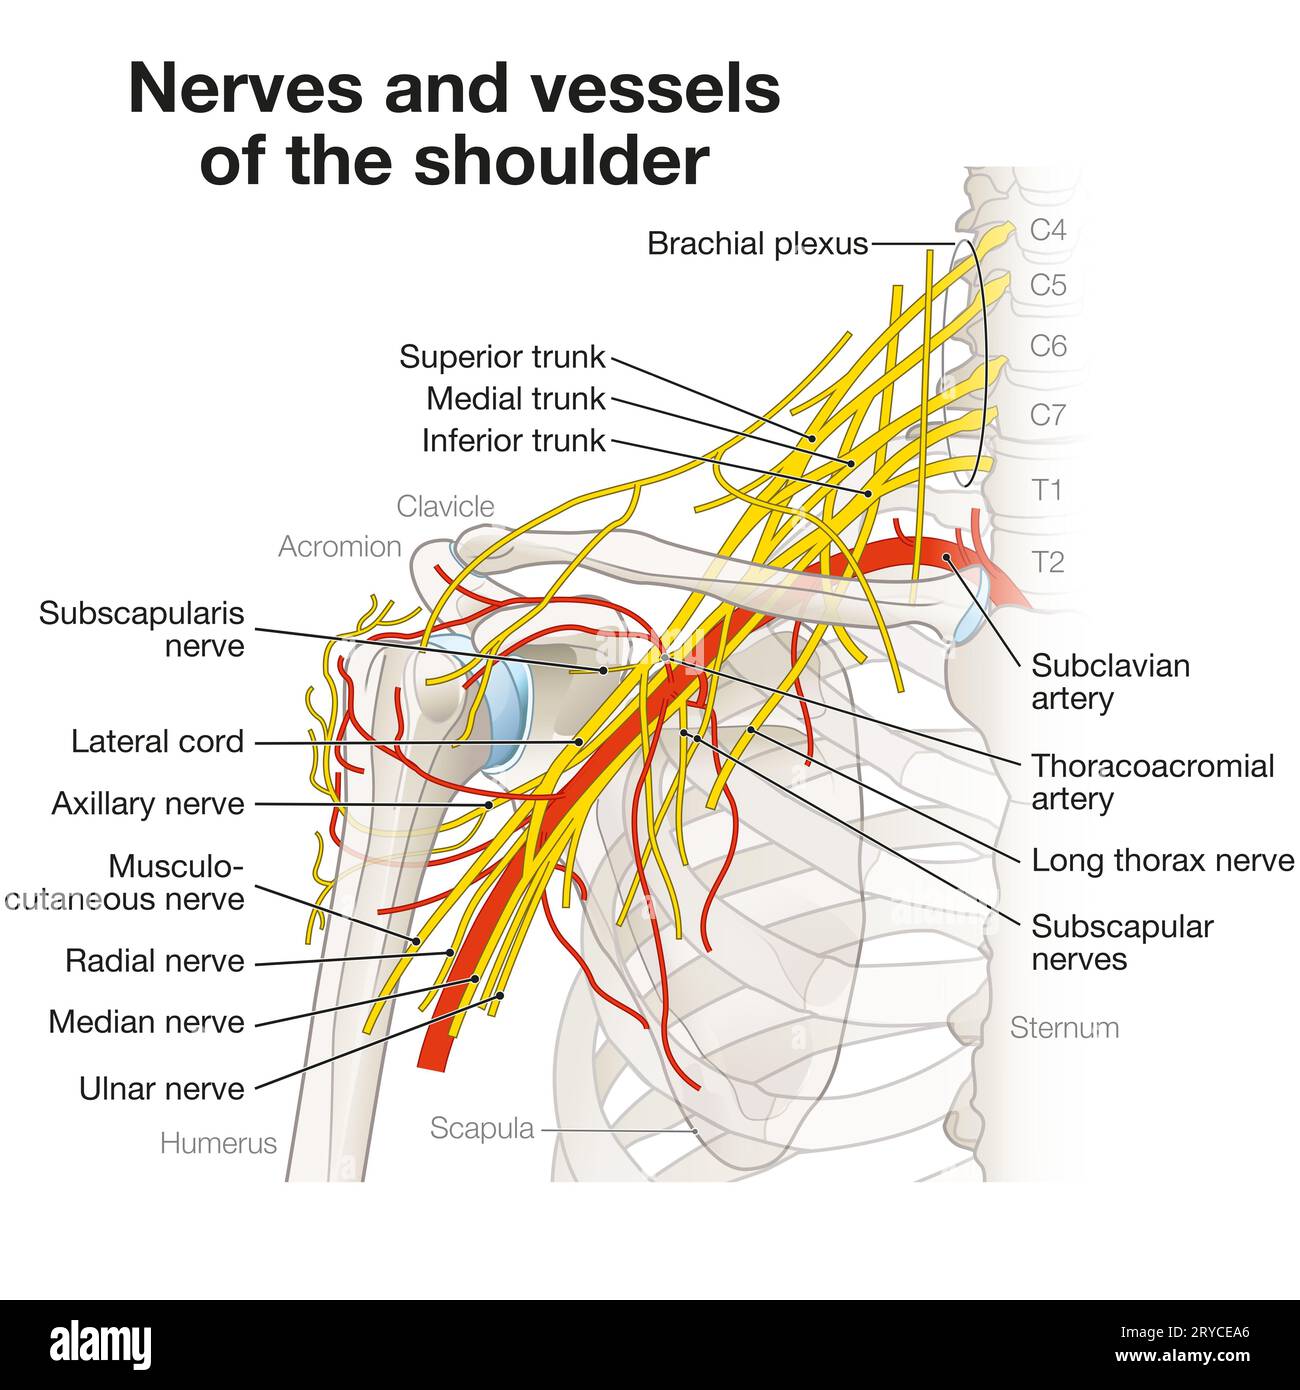 La région de l'épaule abrite un réseau complexe de nerfs et de vaisseaux, y compris le plexus brachial, les artères et les veines, essentiels à l'innervation des membres Banque D'Images